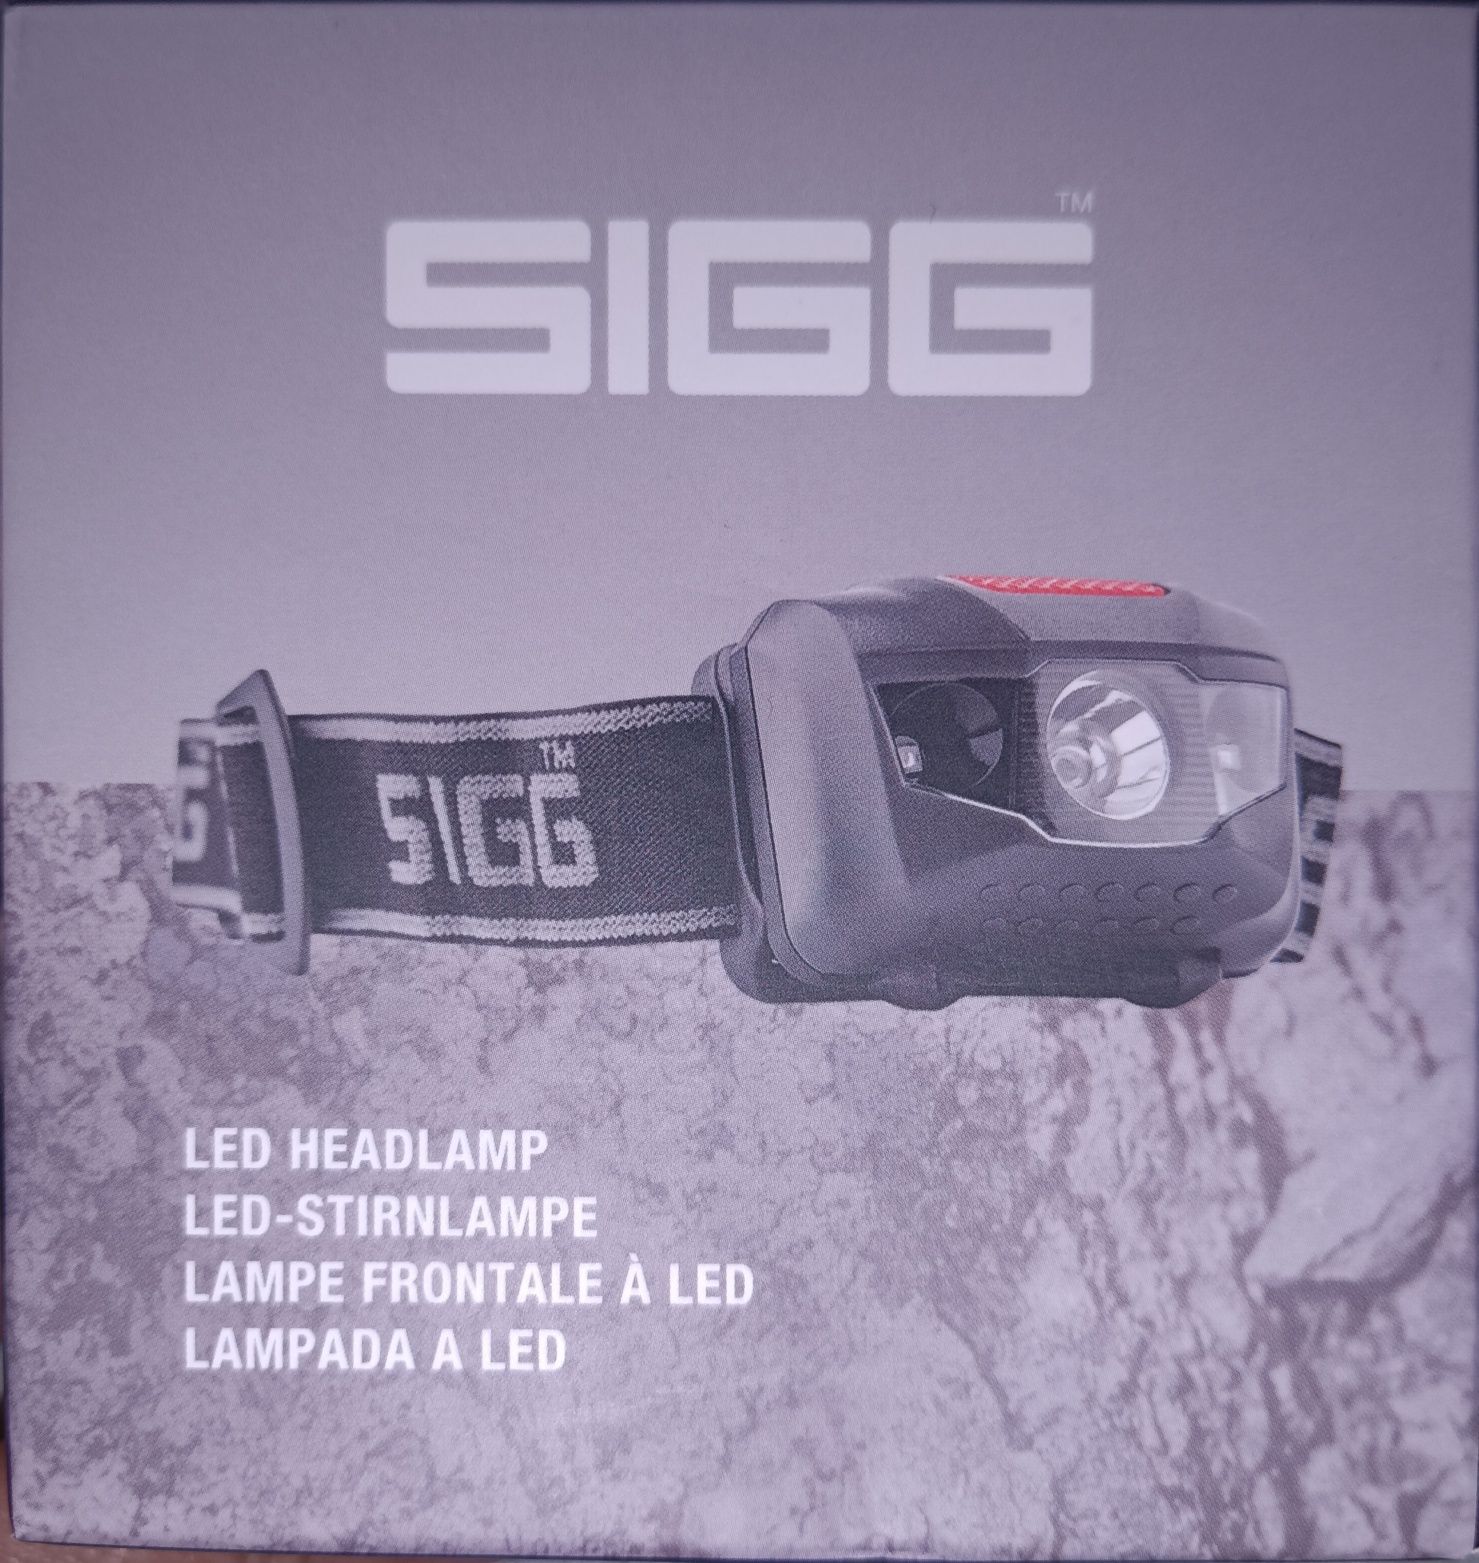 SIGG ліхтарі фонарики від відомого бренда SIGG Швейцарія Якість